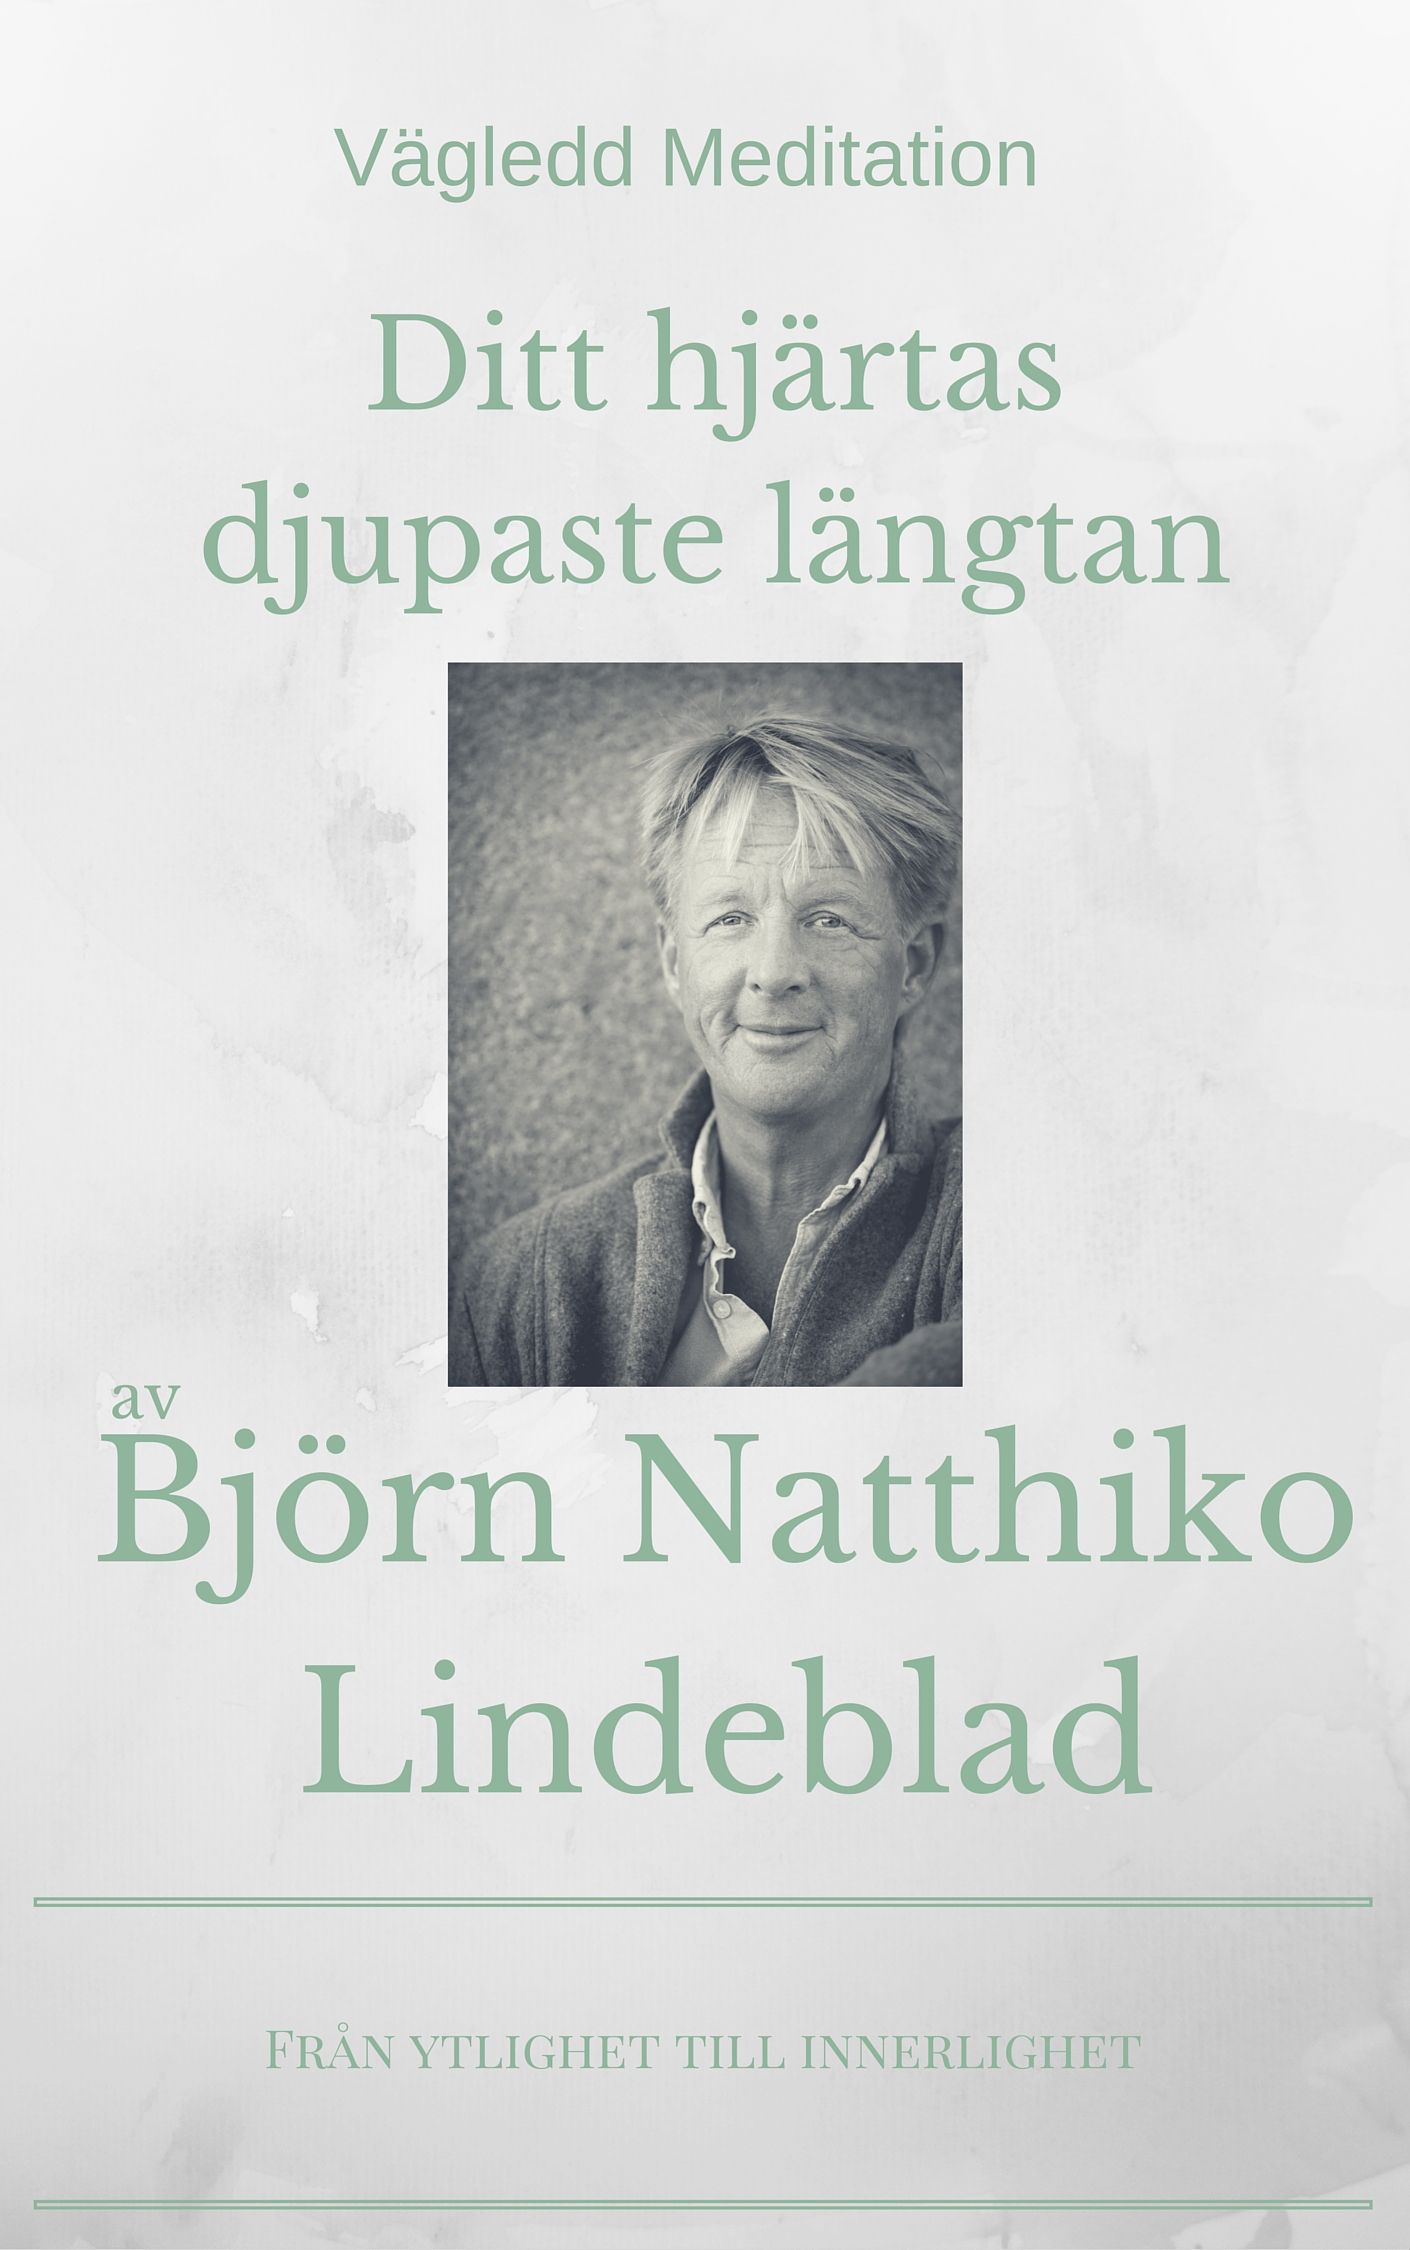 Ditt hjärtas djupaste längtan, ljudbok av Björn Natthiko Lindeblad